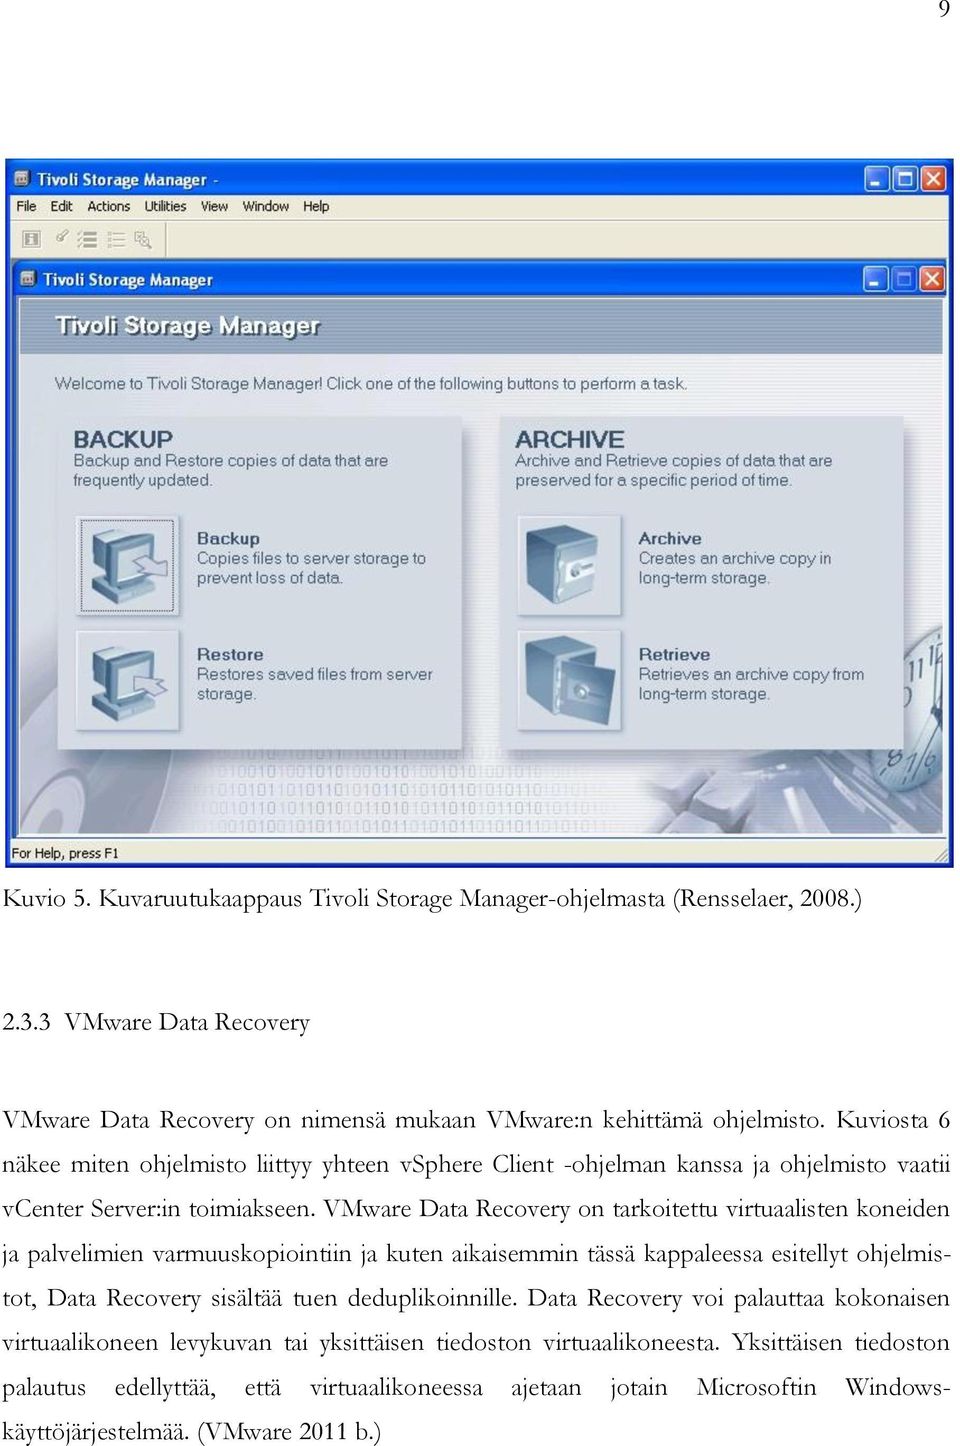 VMware Data Recovery on tarkoitettu virtuaalisten koneiden ja palvelimien varmuuskopiointiin ja kuten aikaisemmin tässä kappaleessa esitellyt ohjelmistot, Data Recovery sisältää tuen